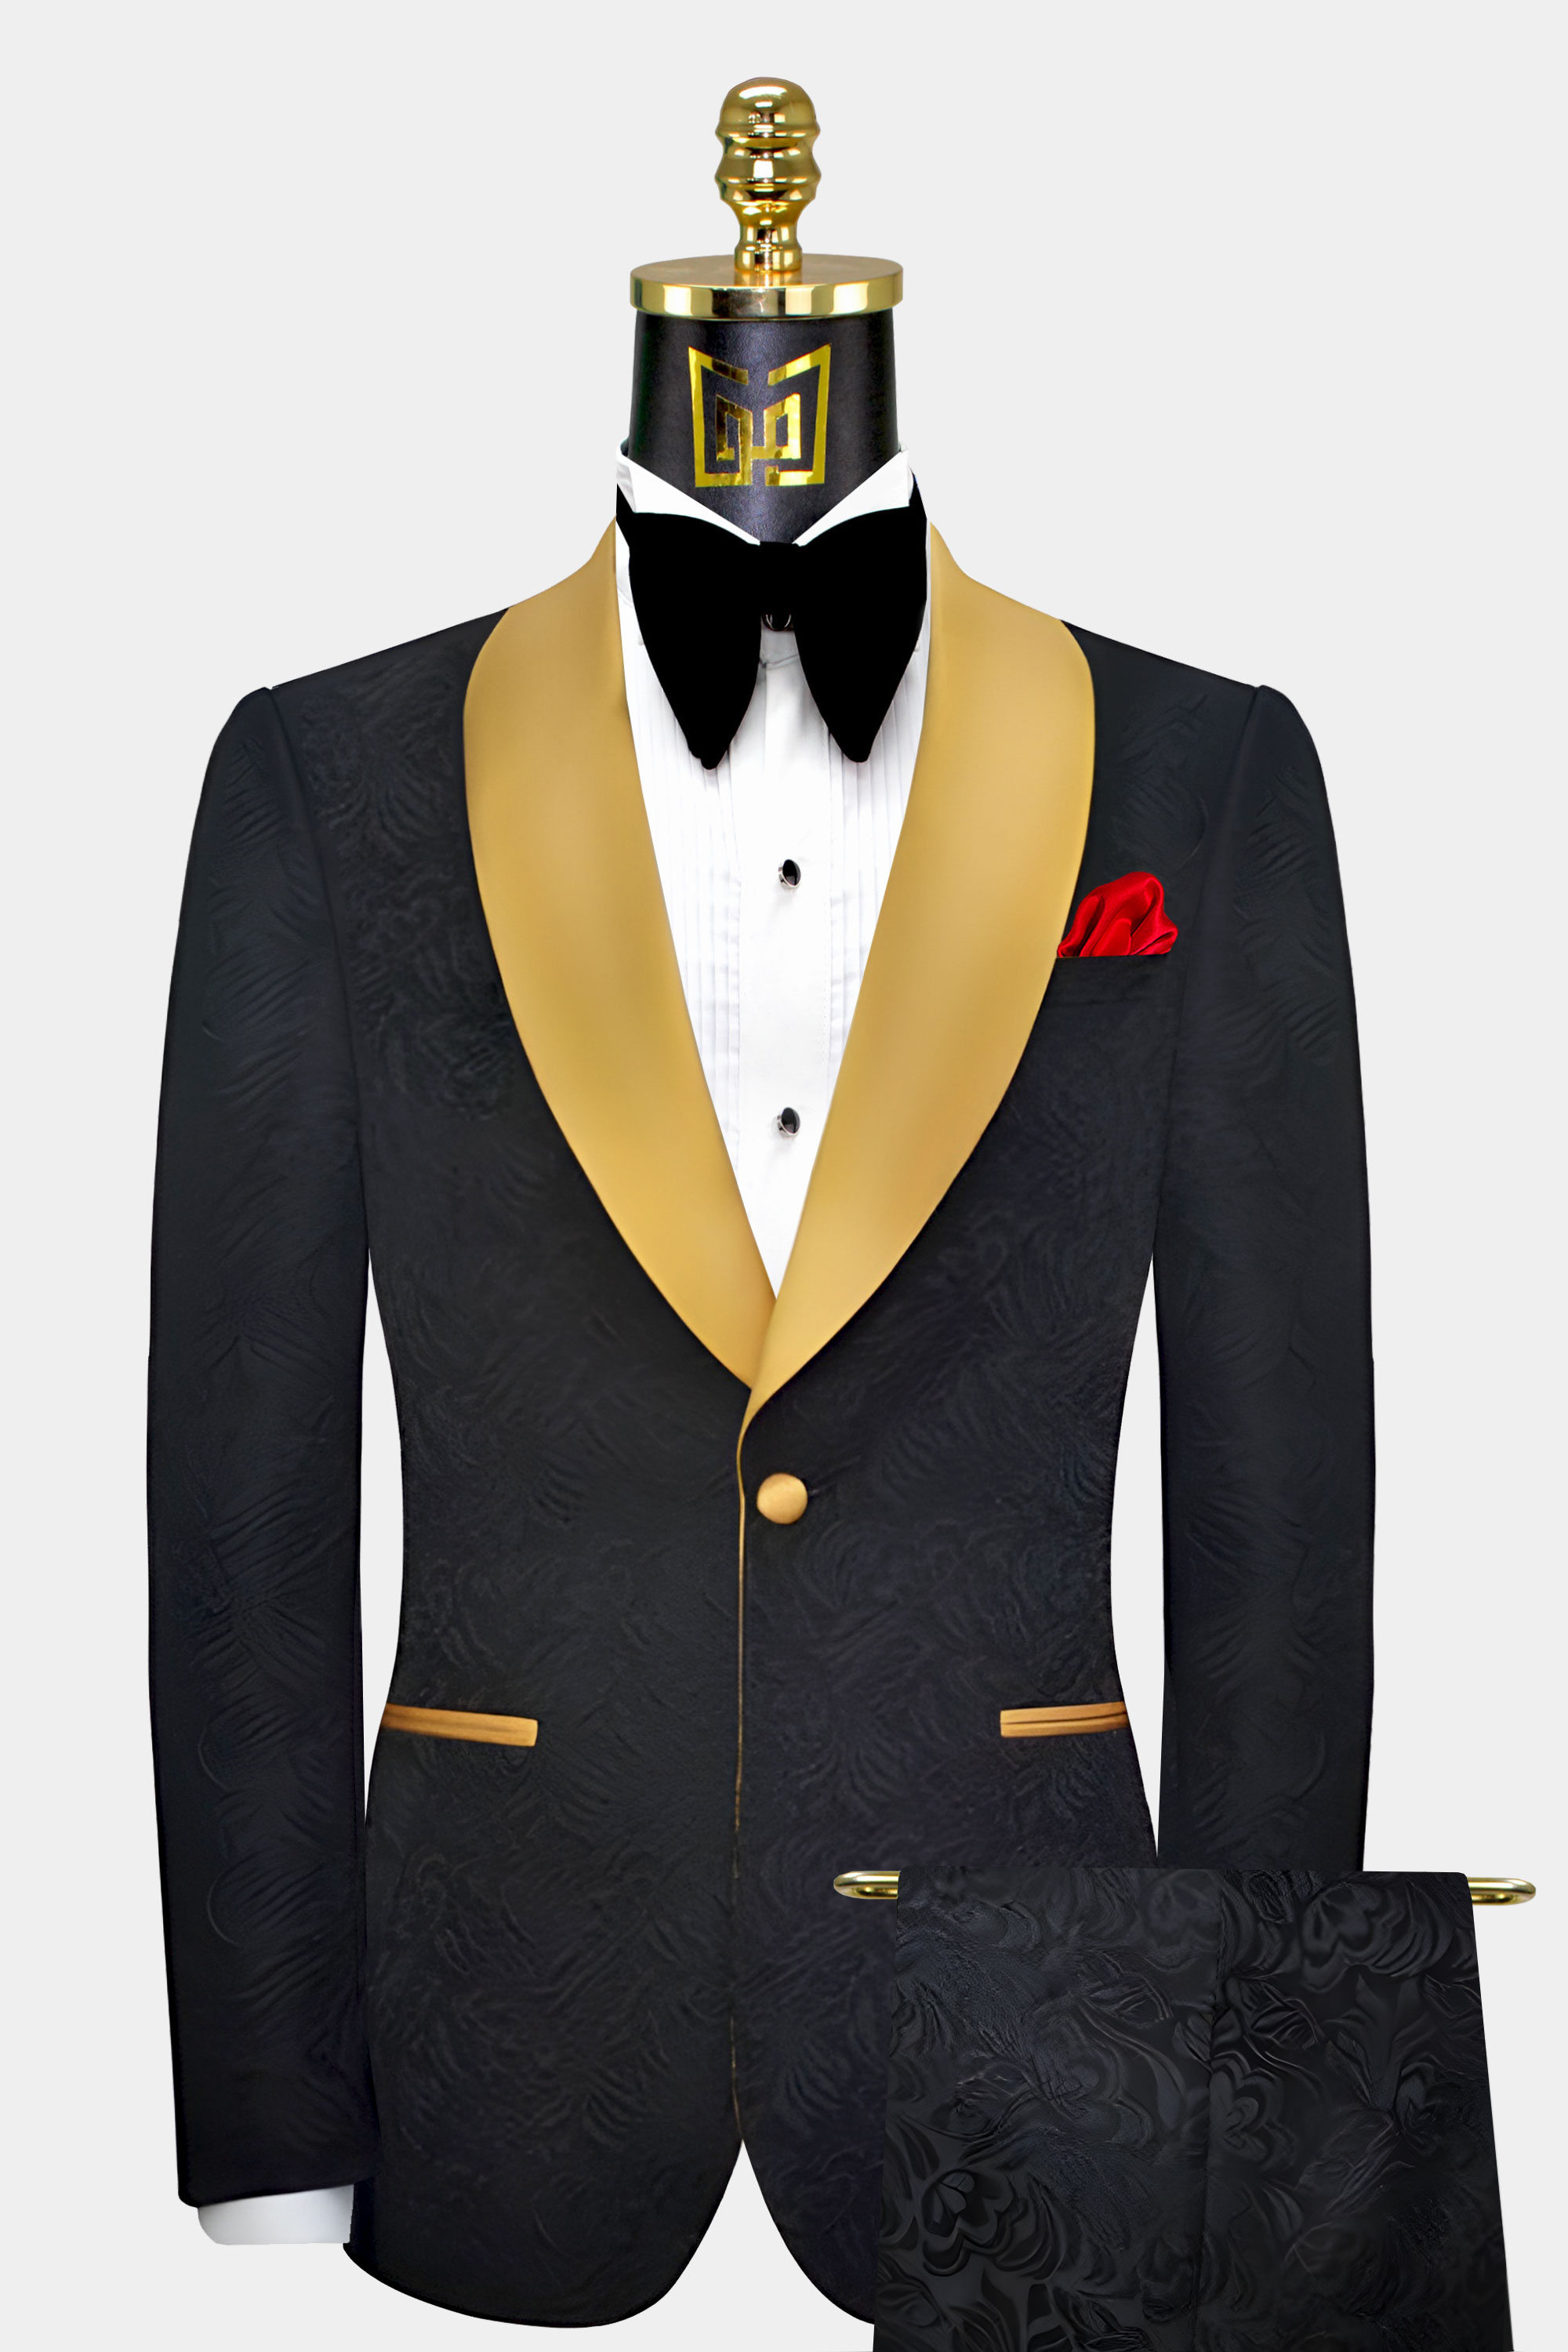 Mens-Black-and-Gold-Tuxedo-Suit-Groom-Wedding-Prom-Suit-from-Gentlemansguru.com